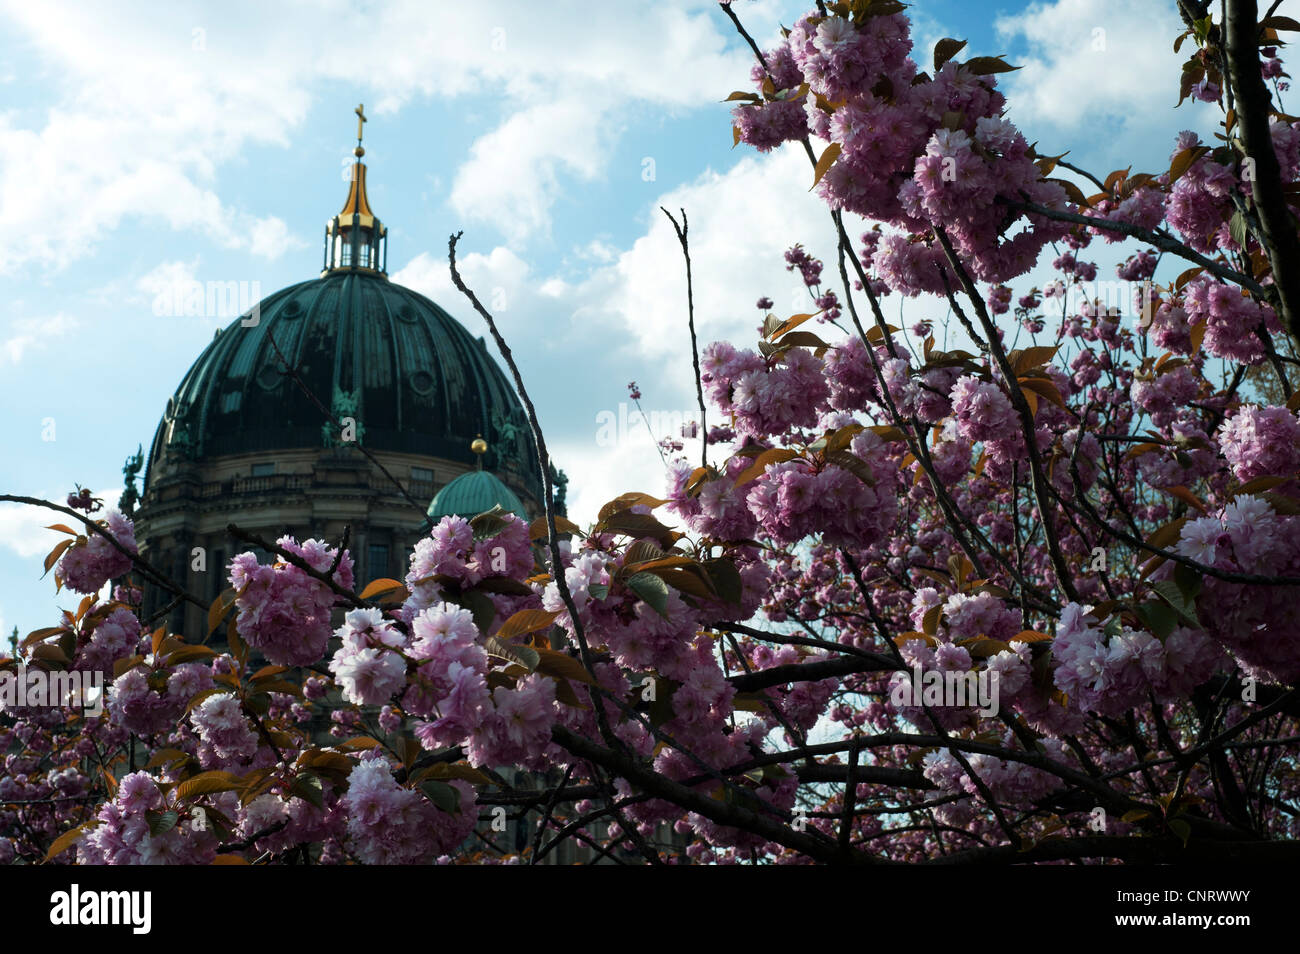 Le dôme de la cathédrale de Berlin, situé sur l'île aux musées de Berlin Mitte au printemps Banque D'Images